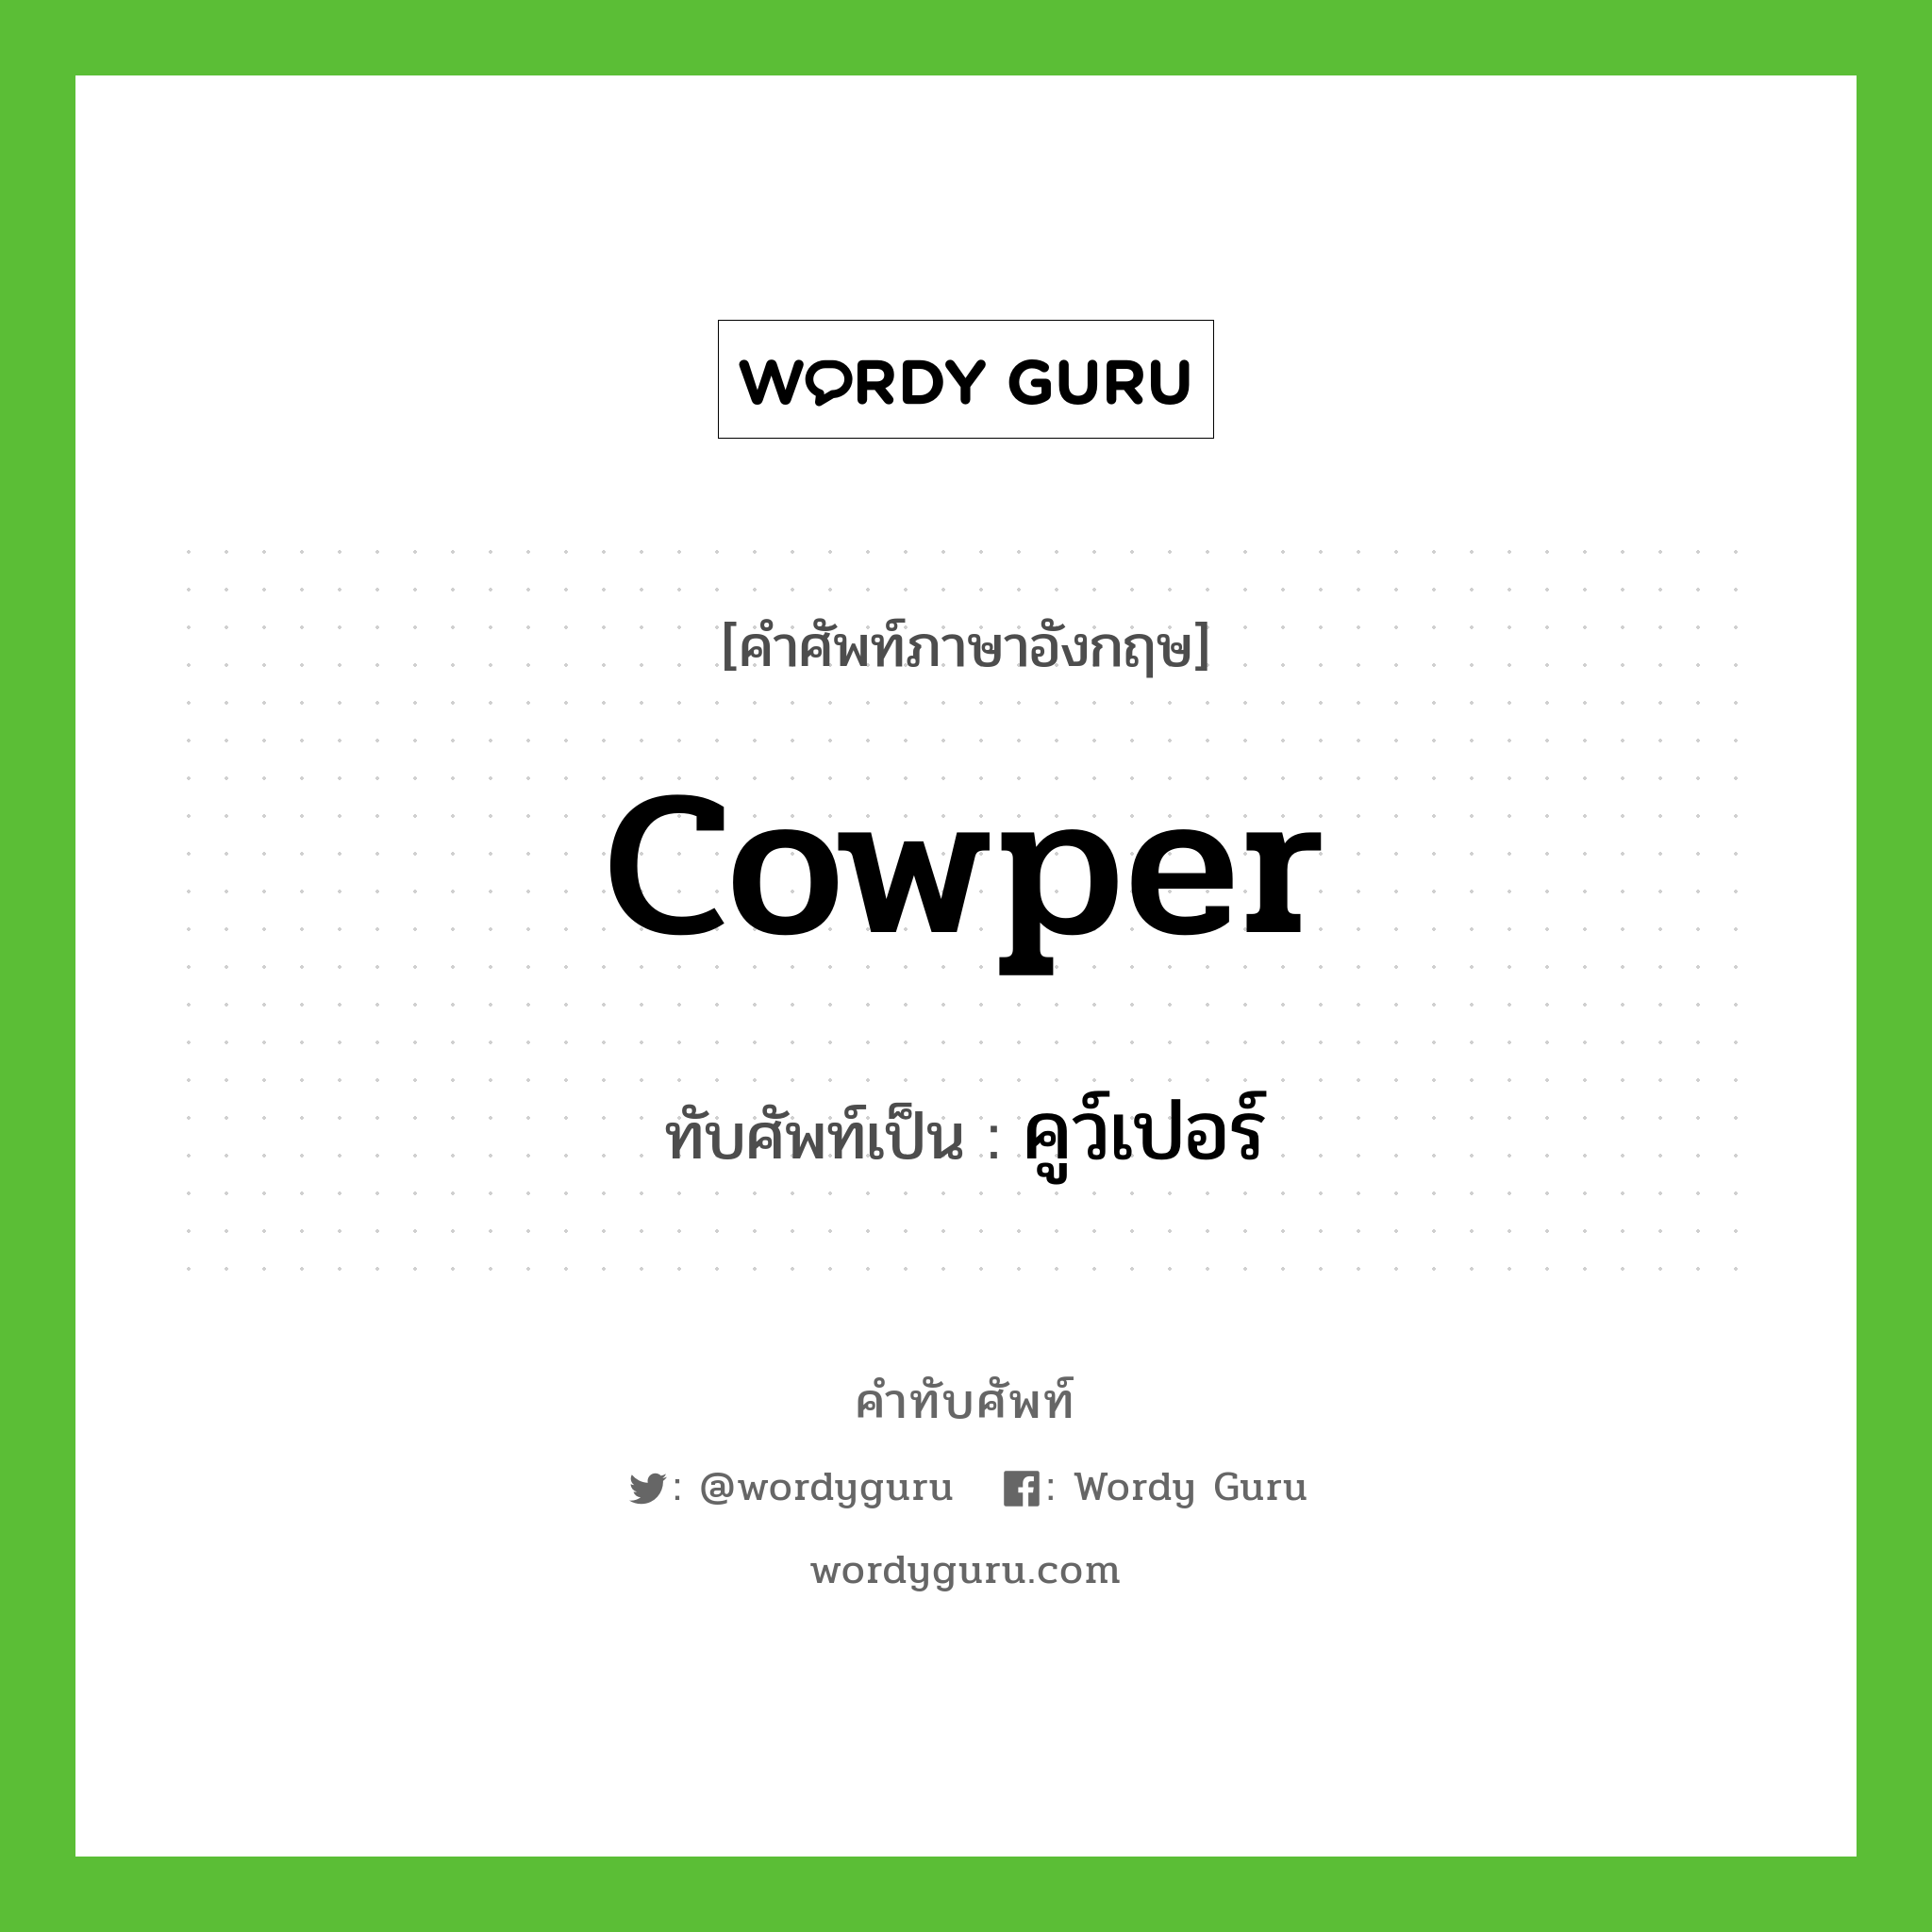 Cowper เขียนเป็นคำไทยว่าอะไร?, คำศัพท์ภาษาอังกฤษ Cowper ทับศัพท์เป็น คูว์เปอร์